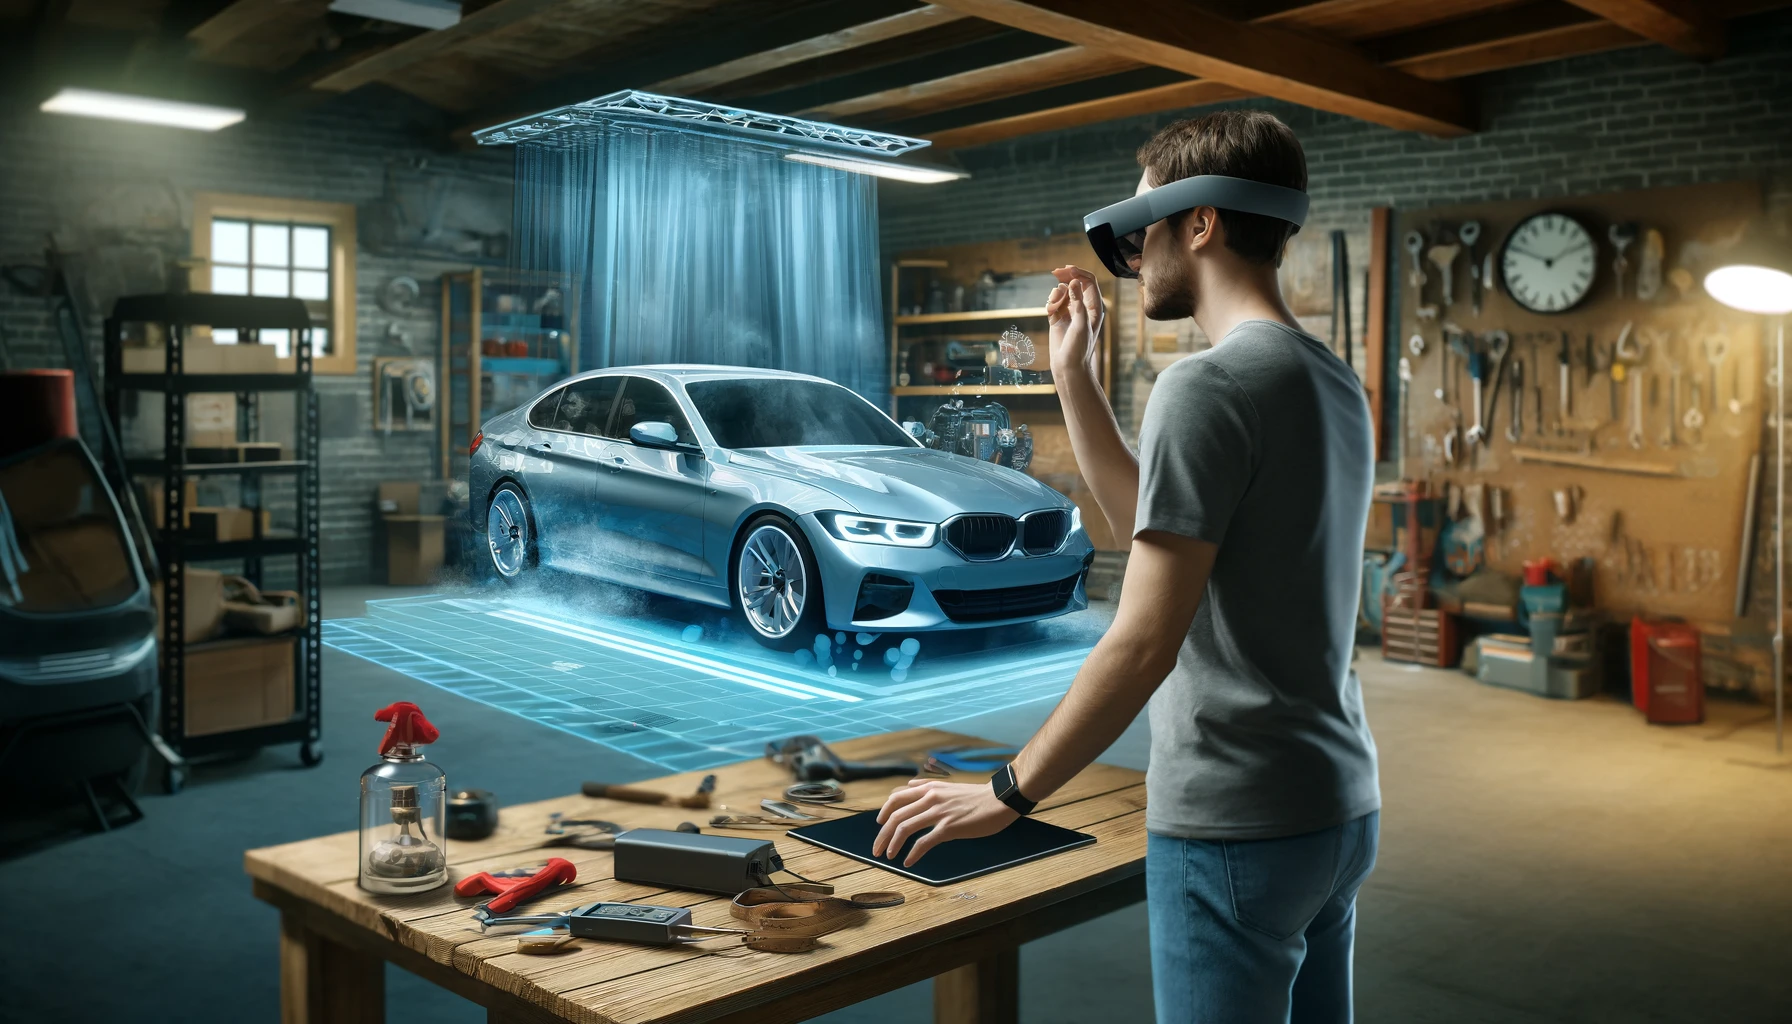 Un usuario experimentando un producto virtualmente a través de gafas de realidad extendida, visualizando un coche nuevo en su propio garaje.